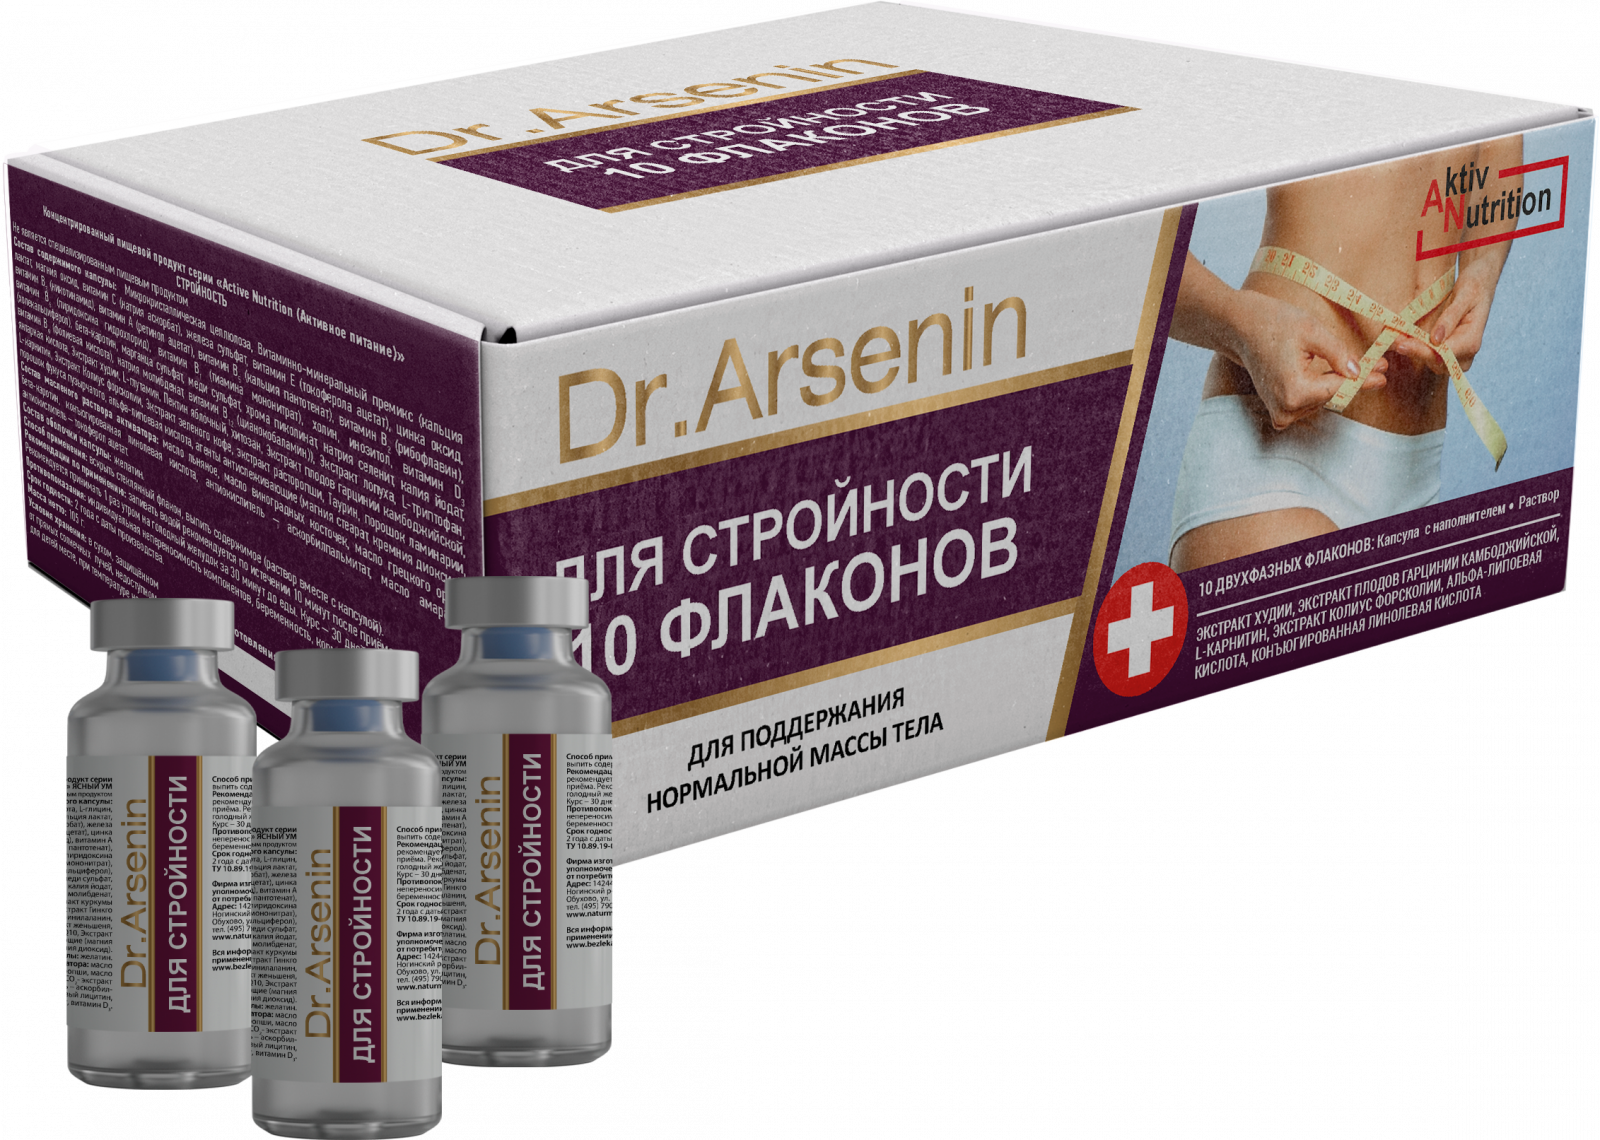  «"Active nutrition" СТРОЙНОСТЬ Dr. Arsenin 10 флаконов» - Капсулы